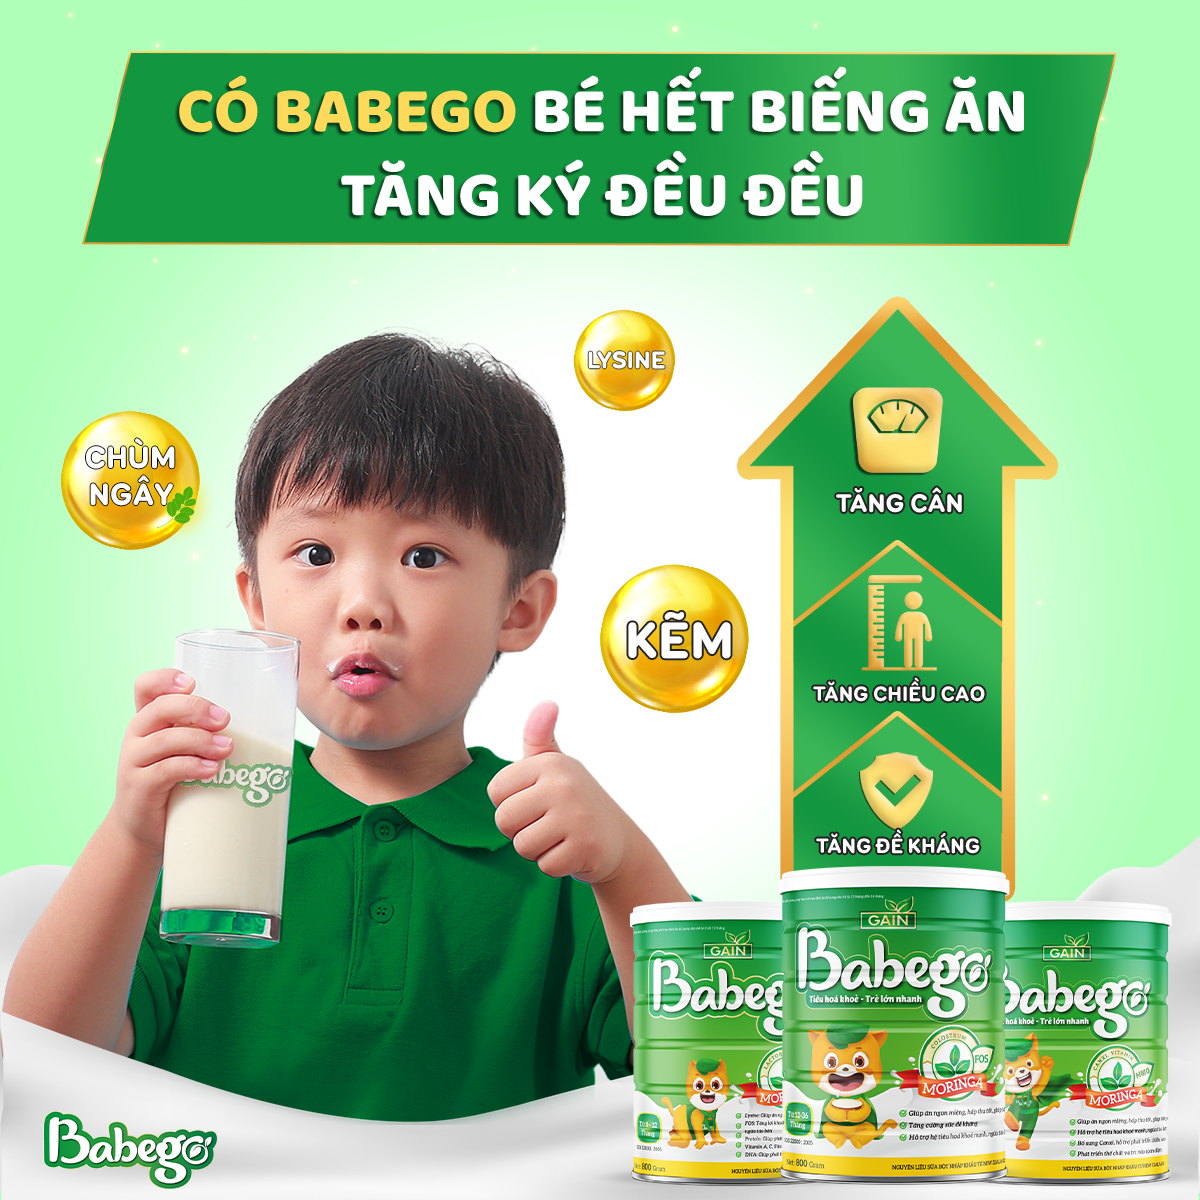 Sữa thảo dược chùm ngây Babego giúp giải quyết dứt điểm tình trạng biếng ăn, kém hấp thu